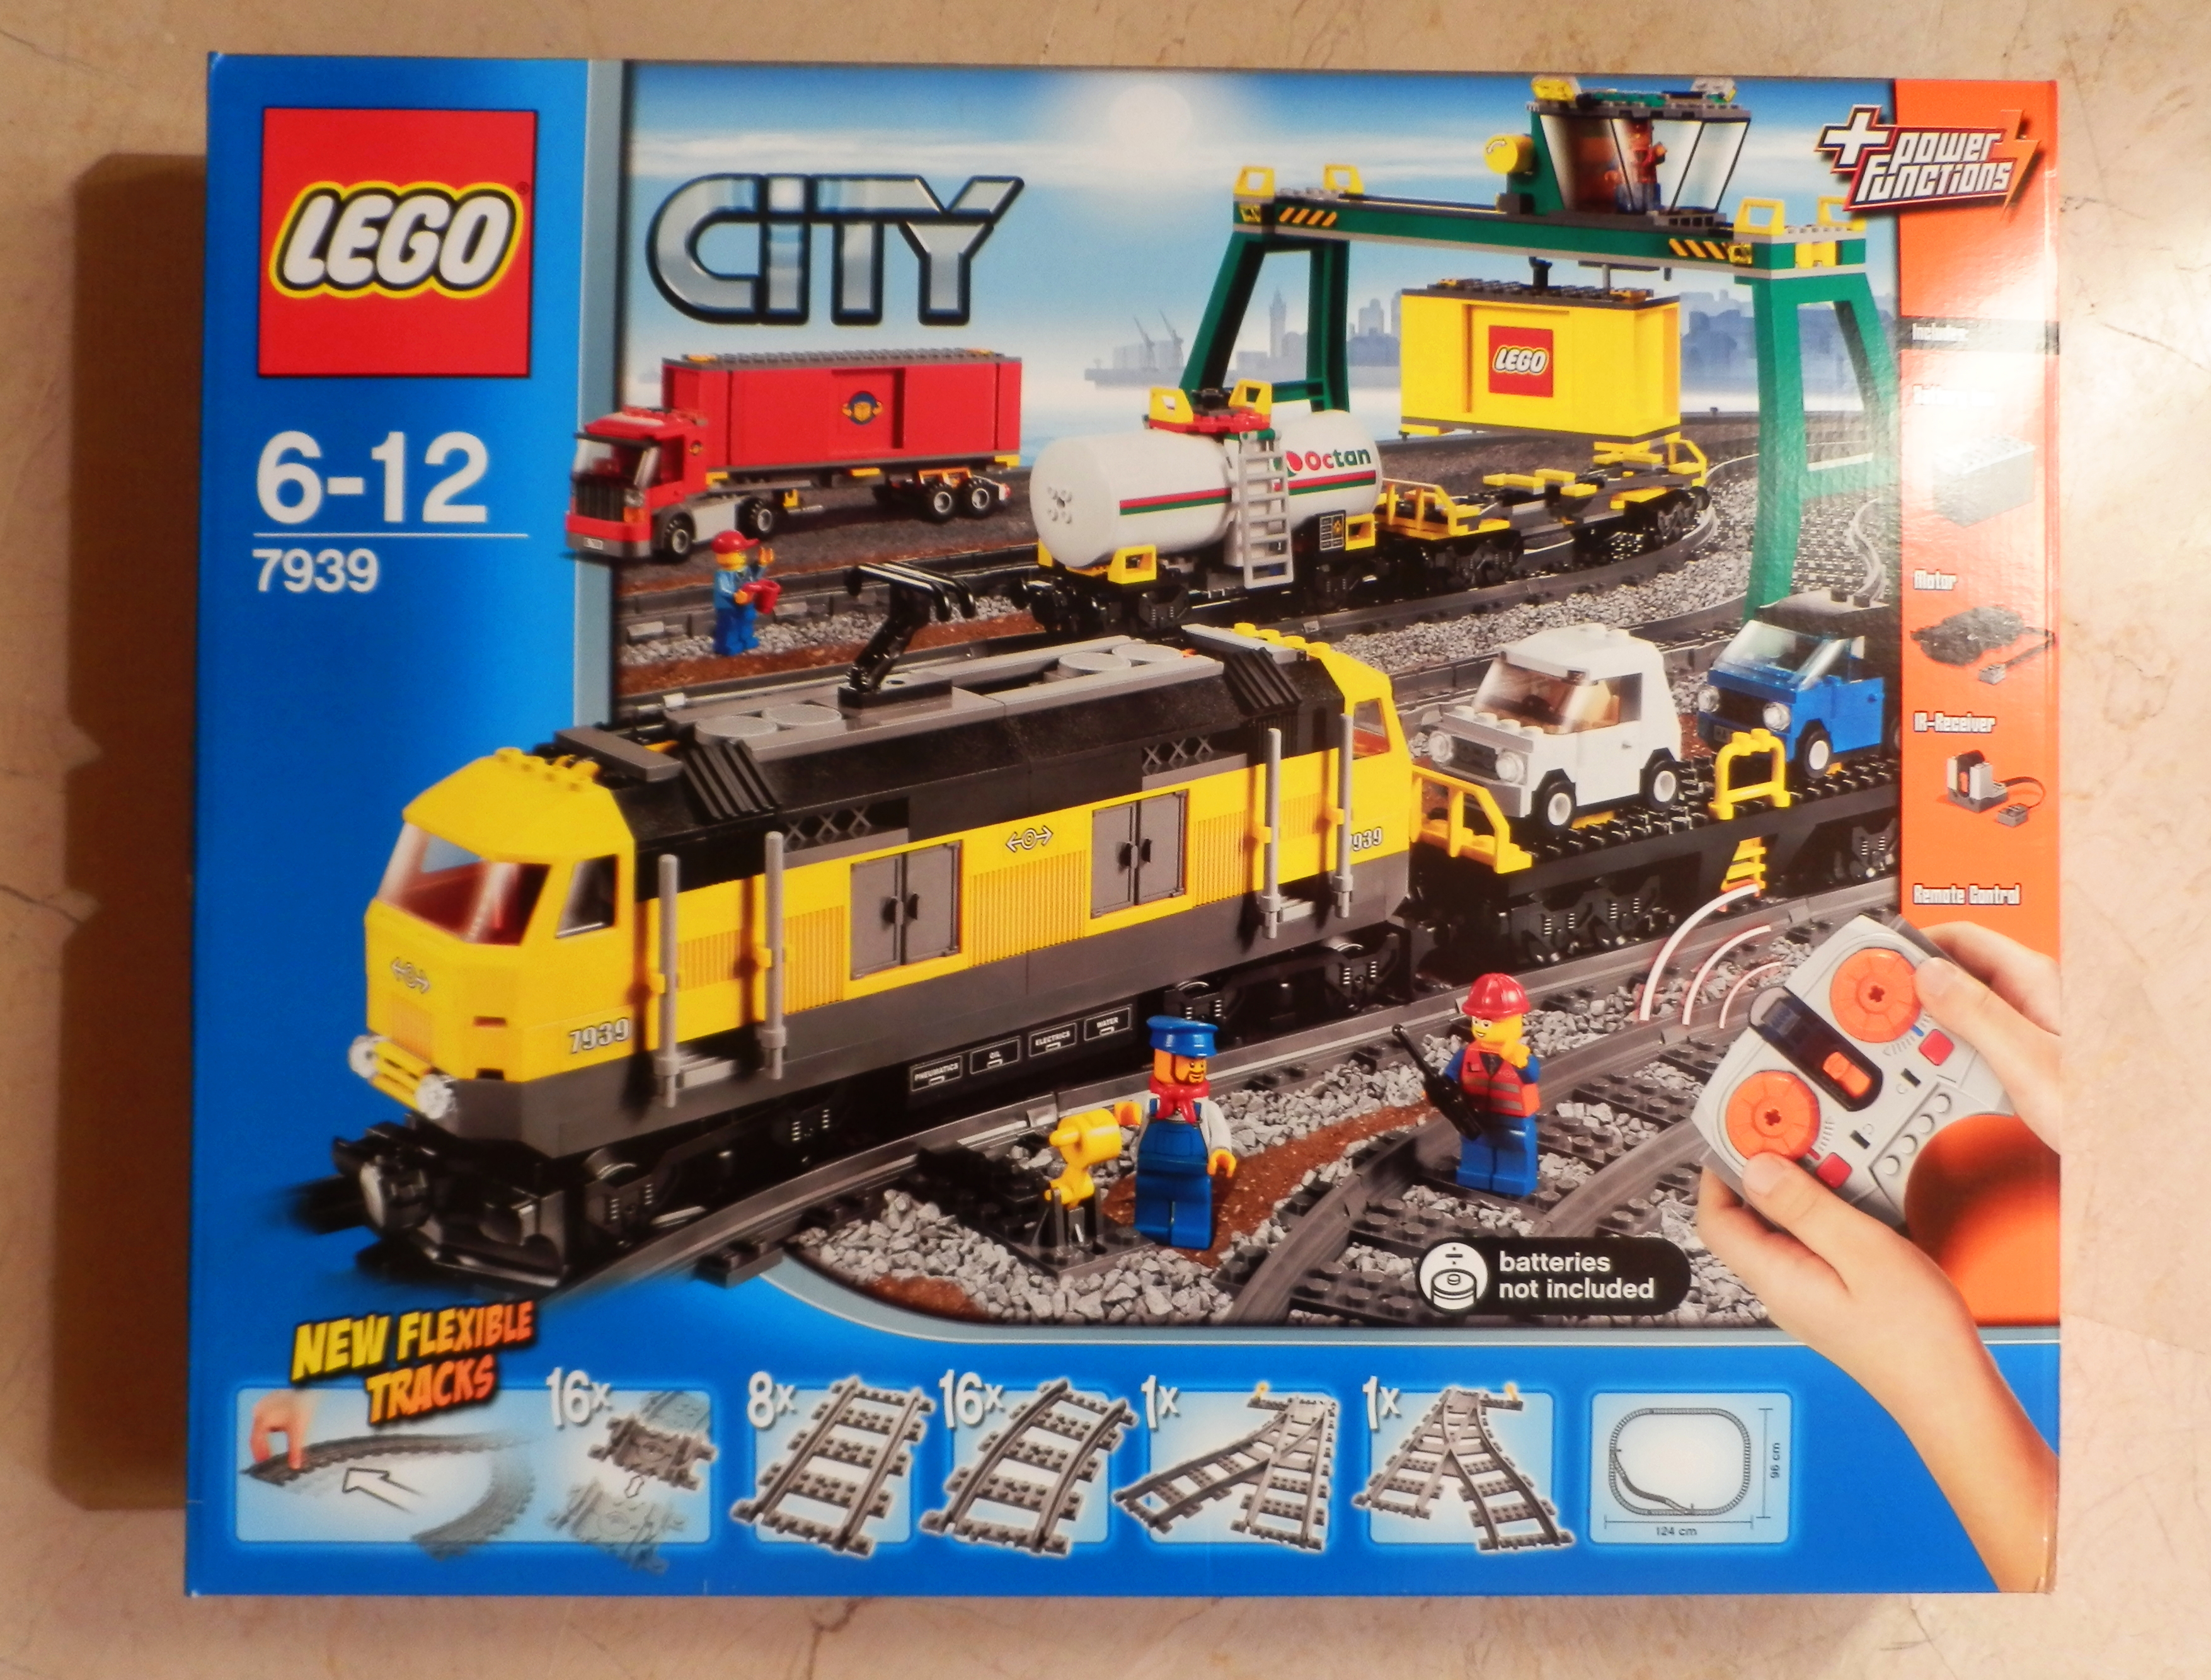 LEGO 7939 Cargo Train Review - LEGO Reviews & Videos